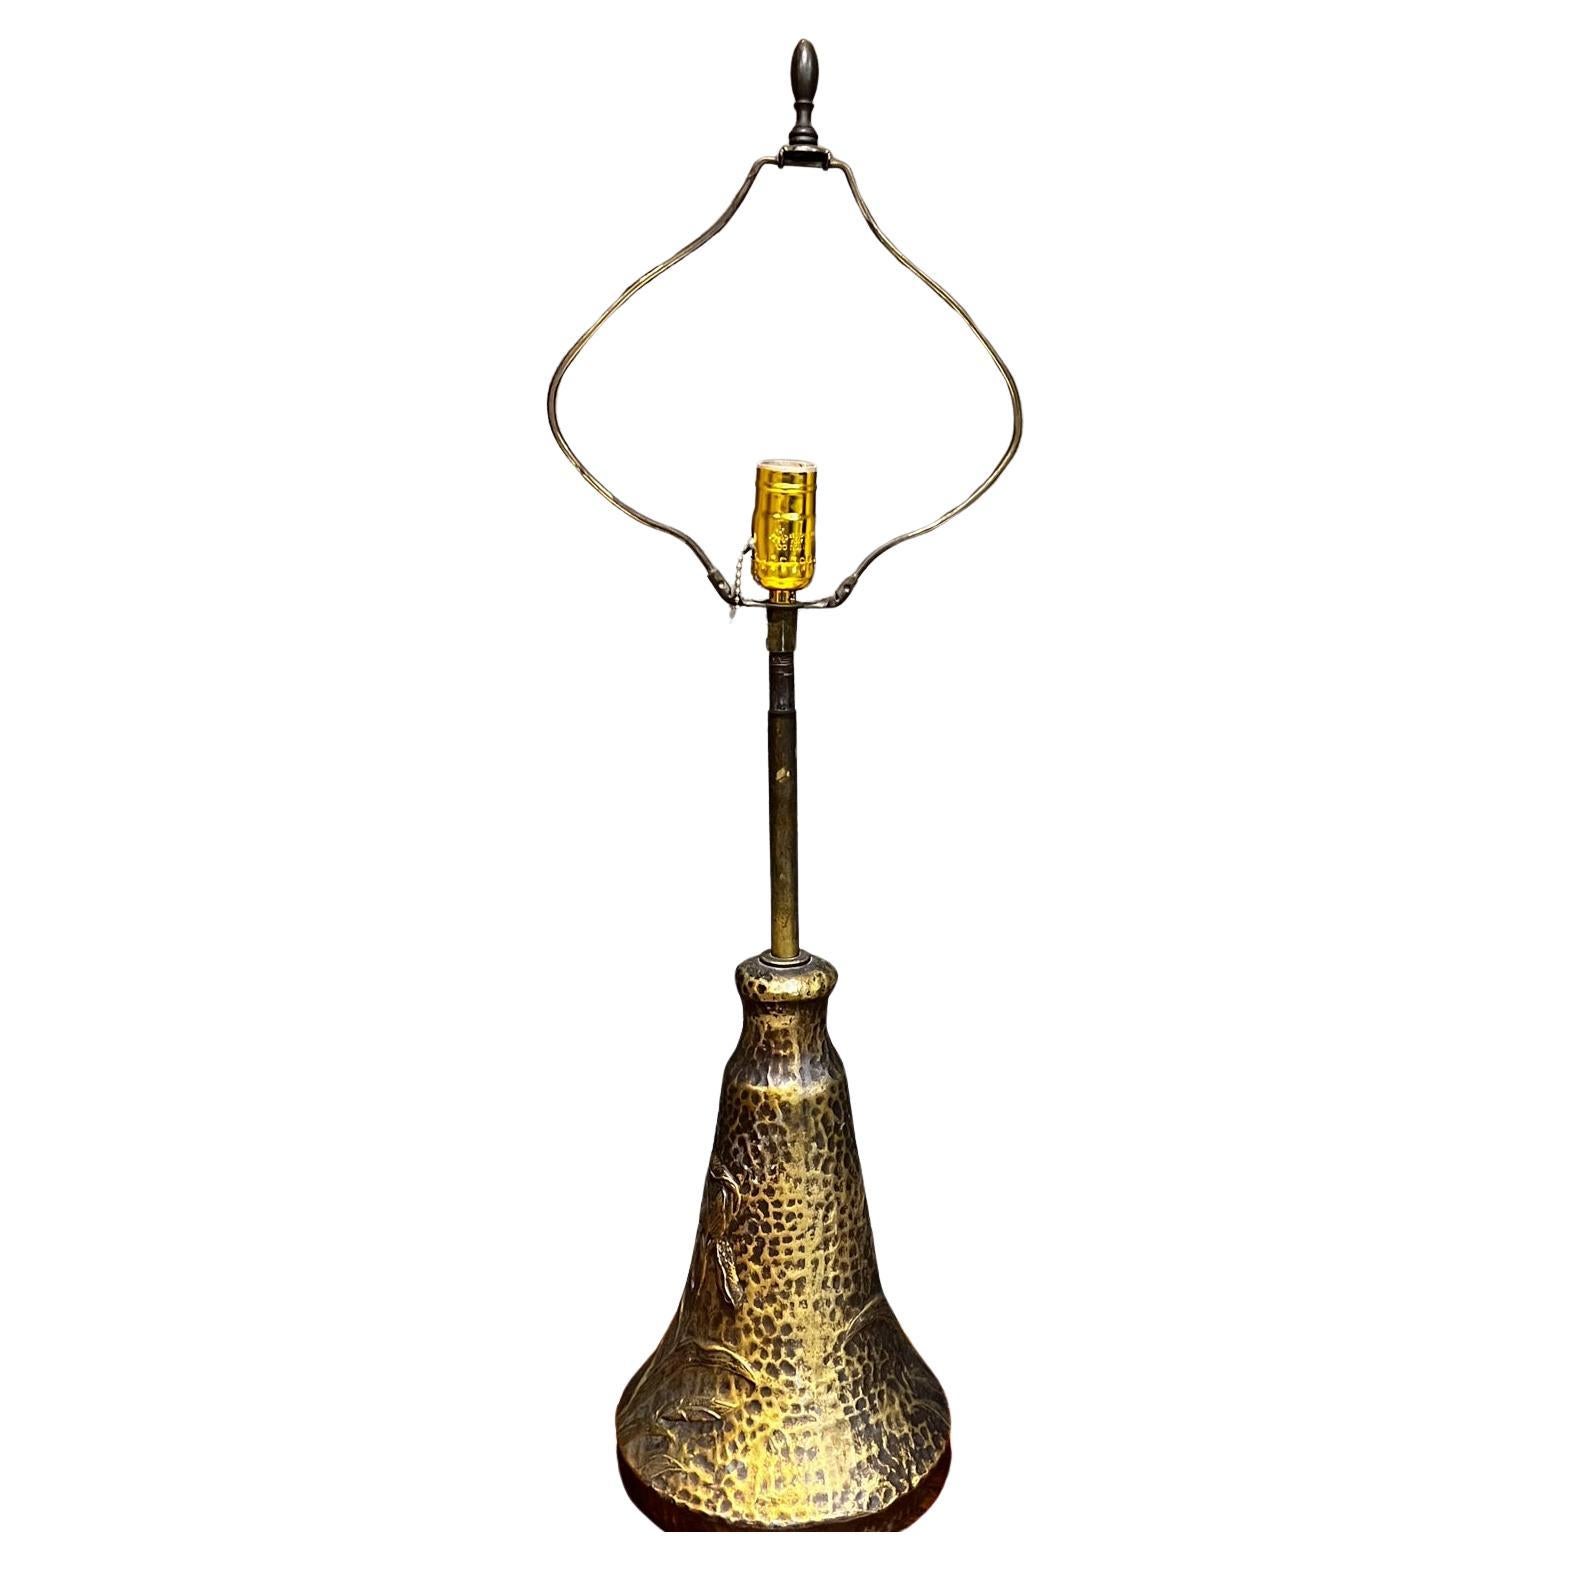 1970s Style Arthur Court Art Nouveau Faux Bronze Table Lamp